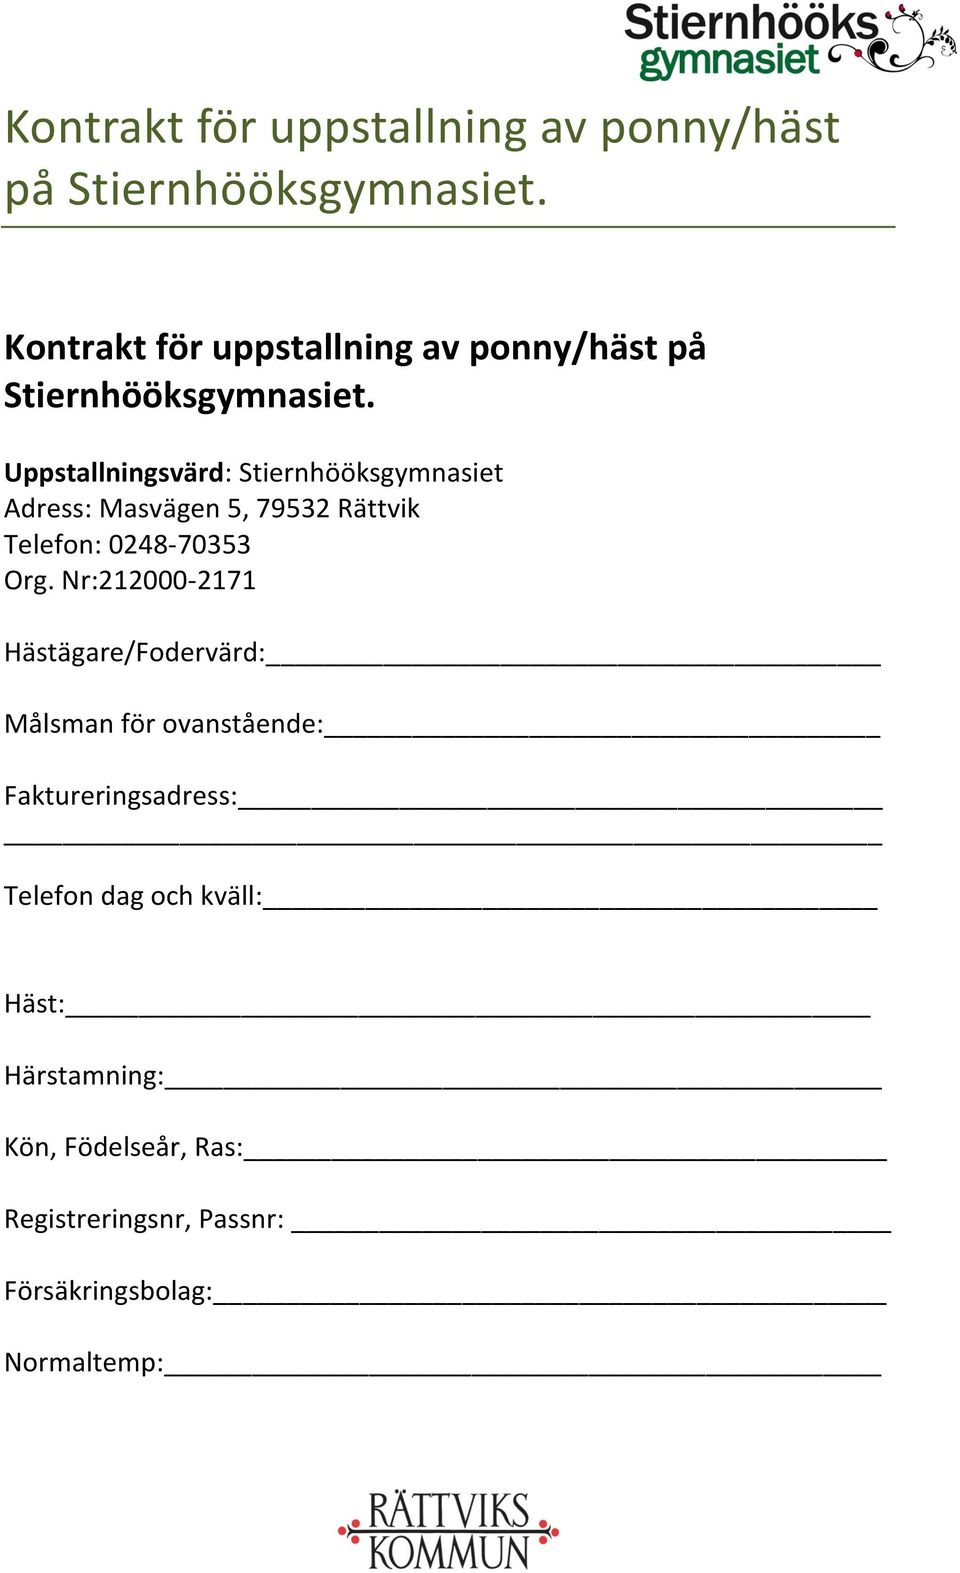 Kontrakt för uppstallning av ponny/häst på Stiernhööksgymnasiet. - PDF  Gratis nedladdning